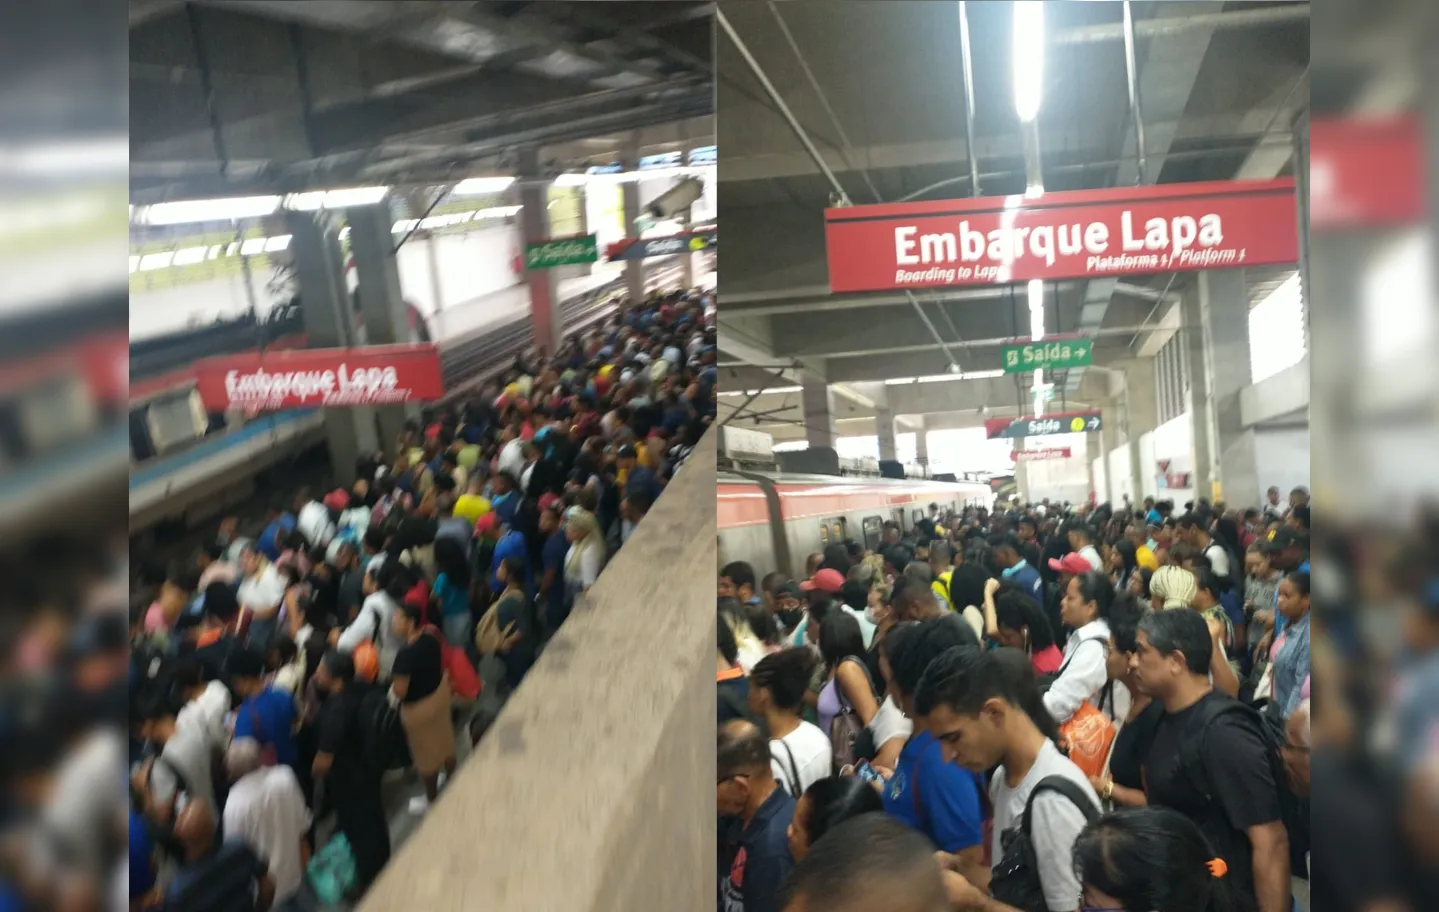 Em nota, a CCR Metrô Bahia informou que por volta das 6h23 a circulação de trens foi plenamente normalizada